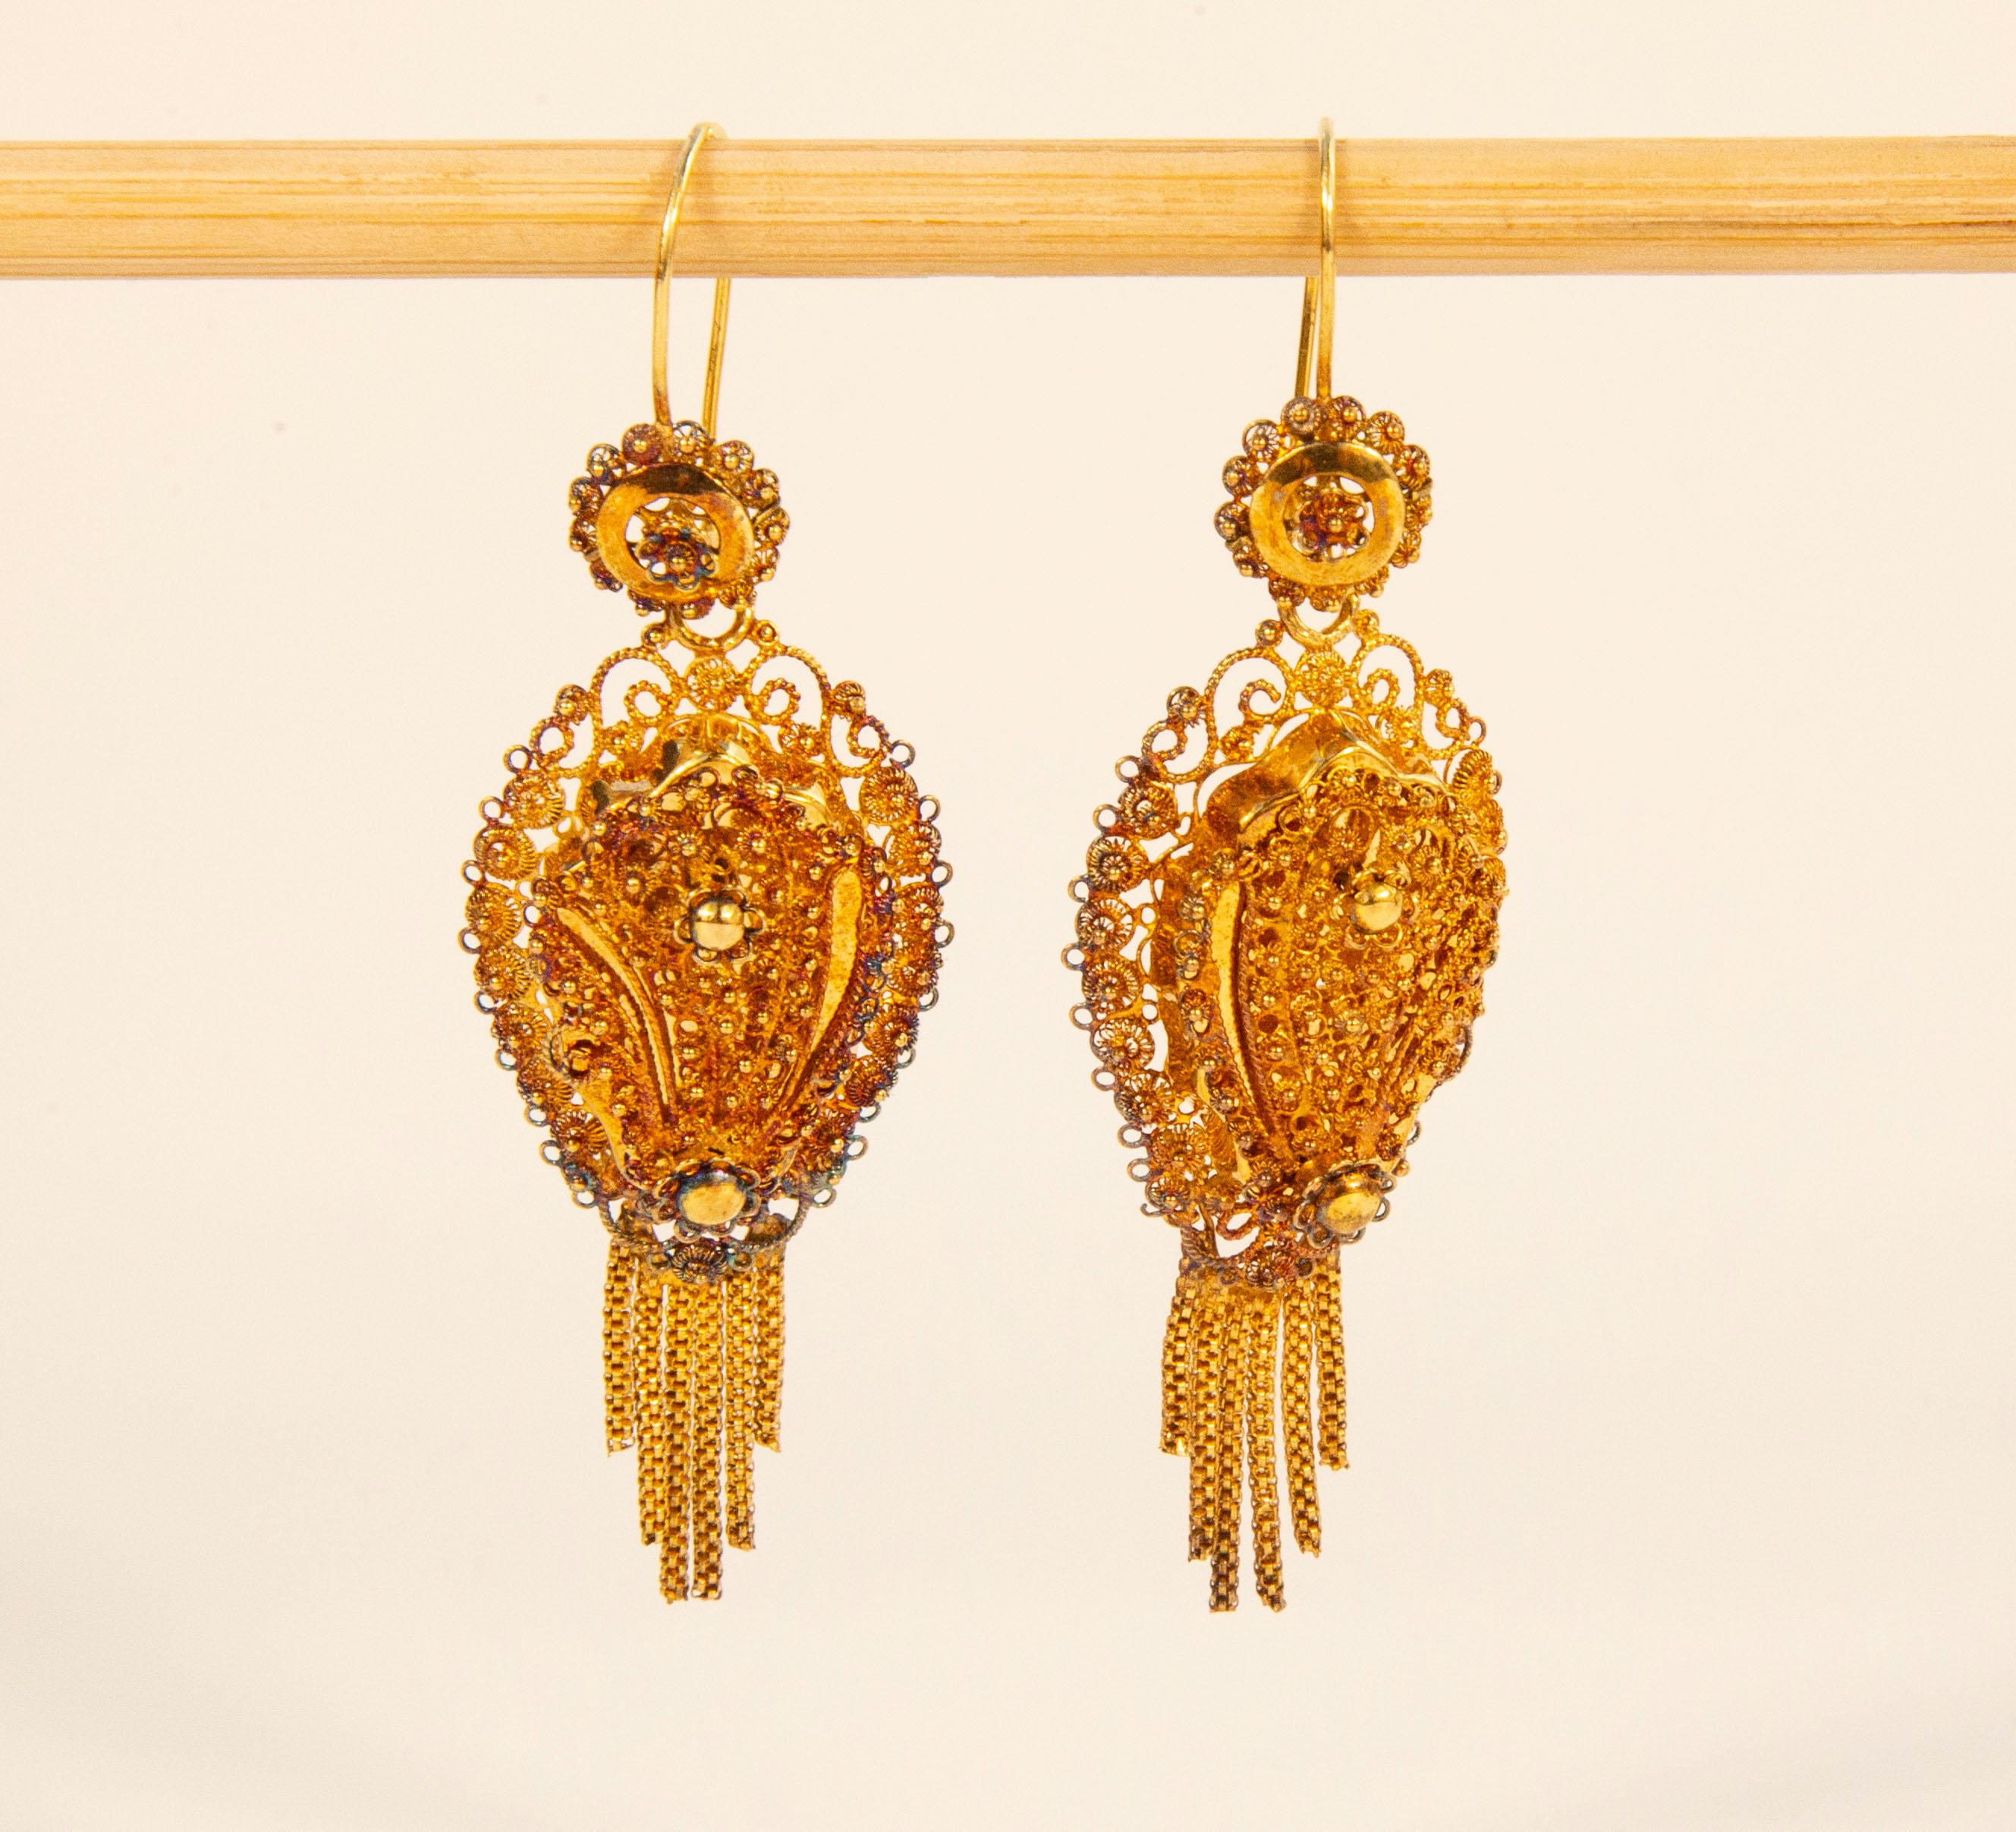 Antike holländische Ohrringe aus 14 Karat Gelbgold in Filigrantechnik. Die Filigrantechnik ist eine sehr raffinierte Methode, bei der ein dünner Goldfaden verwendet wird, um ein spitzenartiges Muster und eine feine Stickerei zu bilden. Jedes Stück